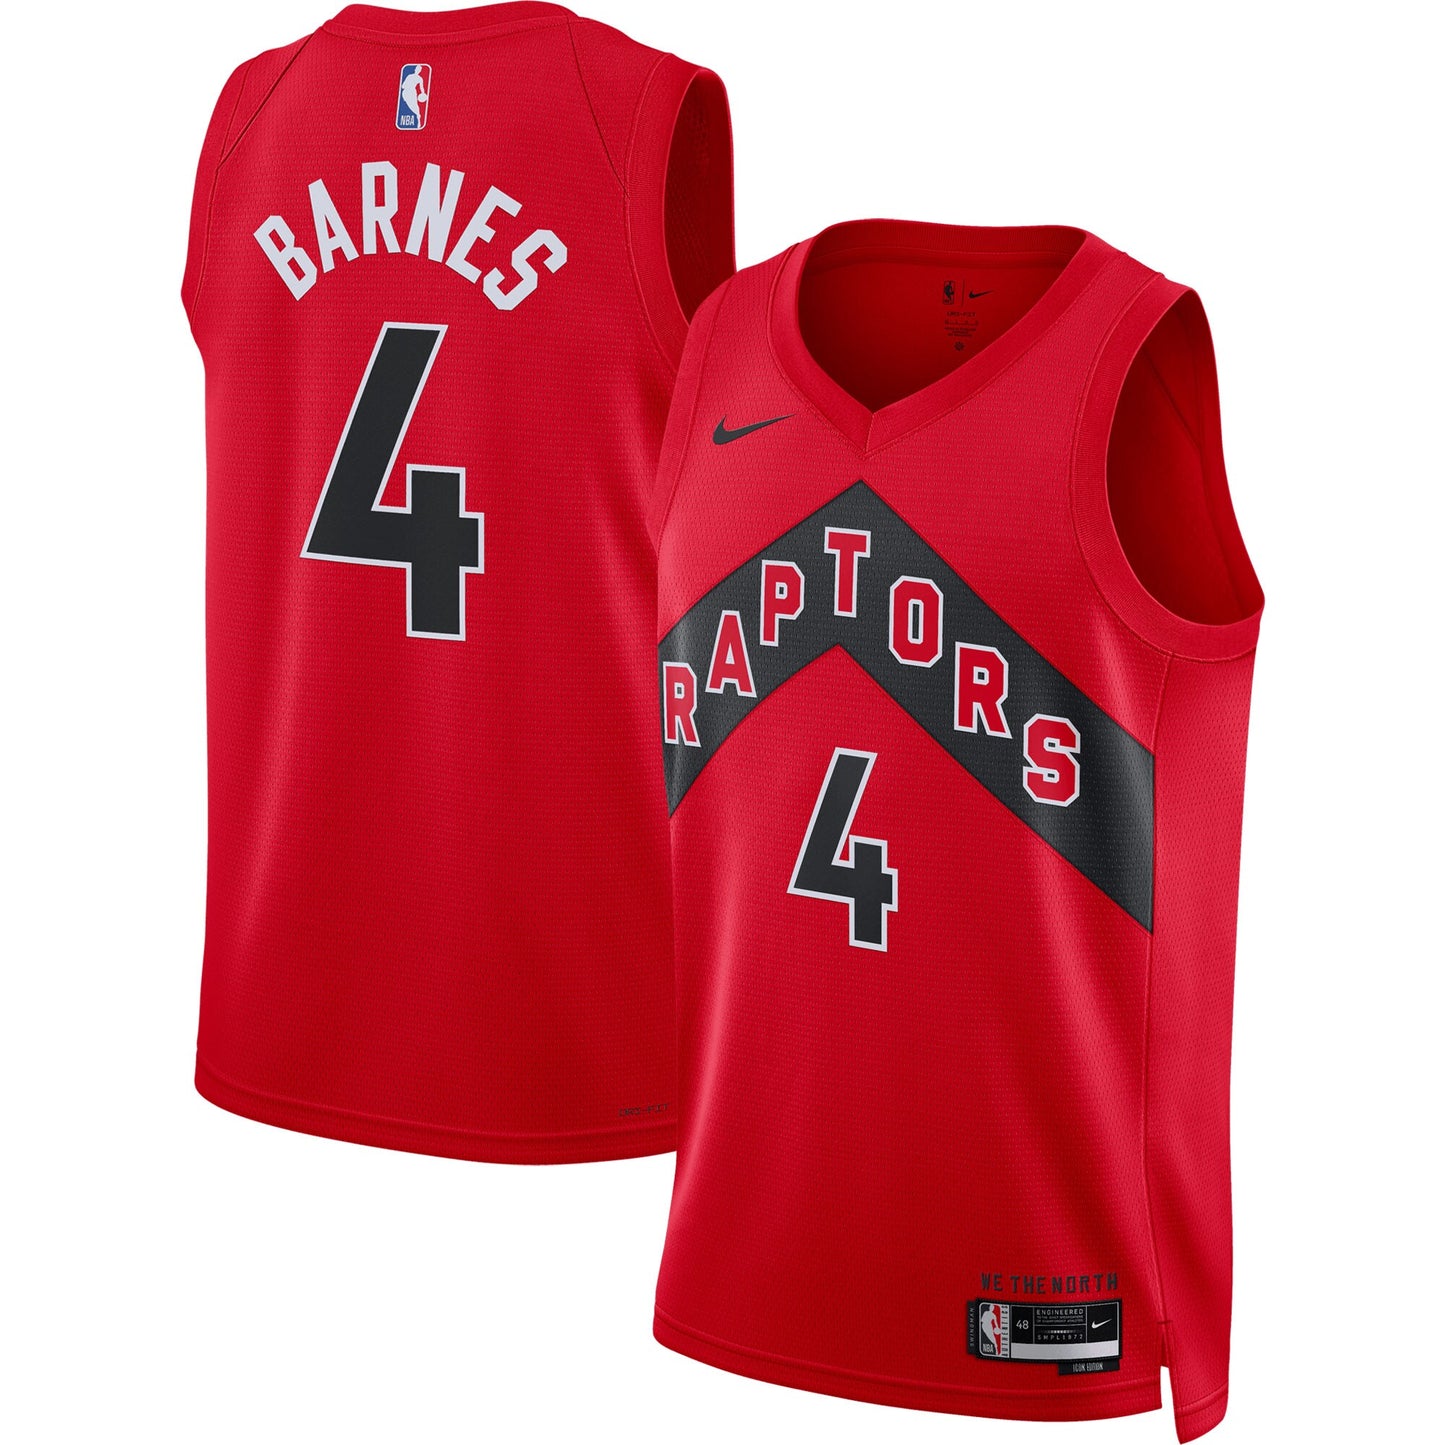 Scottie Barnes Toronto Raptors Nike Unisex Swingman Jersey - Association Edition - Red